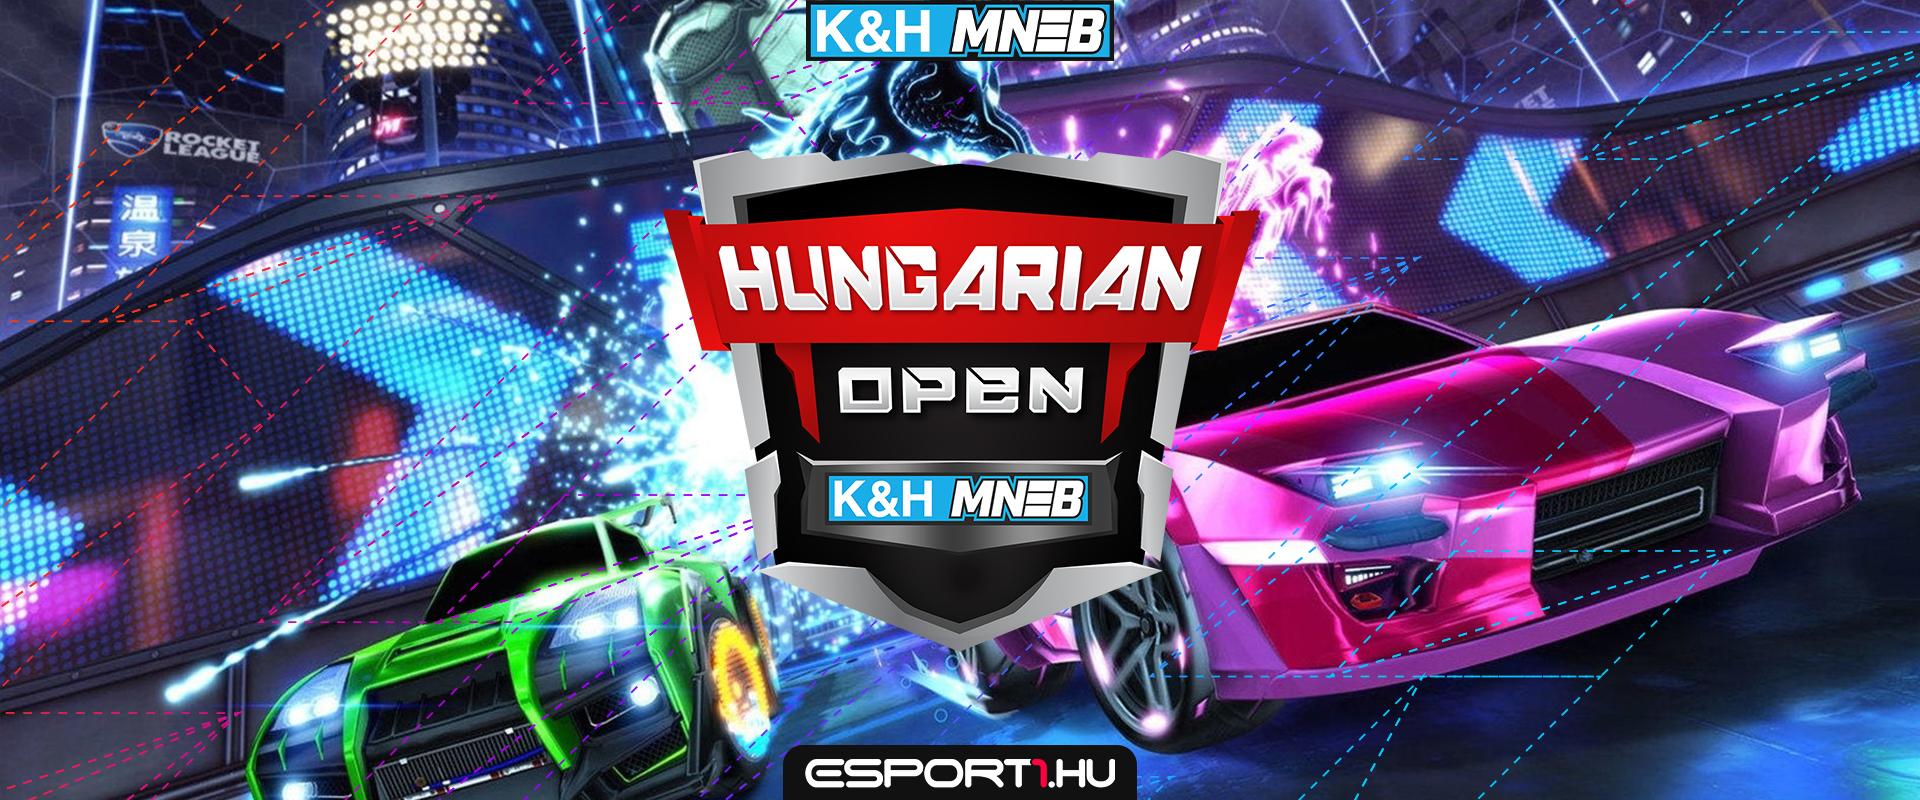 K&H MNEB-HO: Meggyőző teljesítménnyel az MTK Budapest lett végül a 3. esemény bajnoka